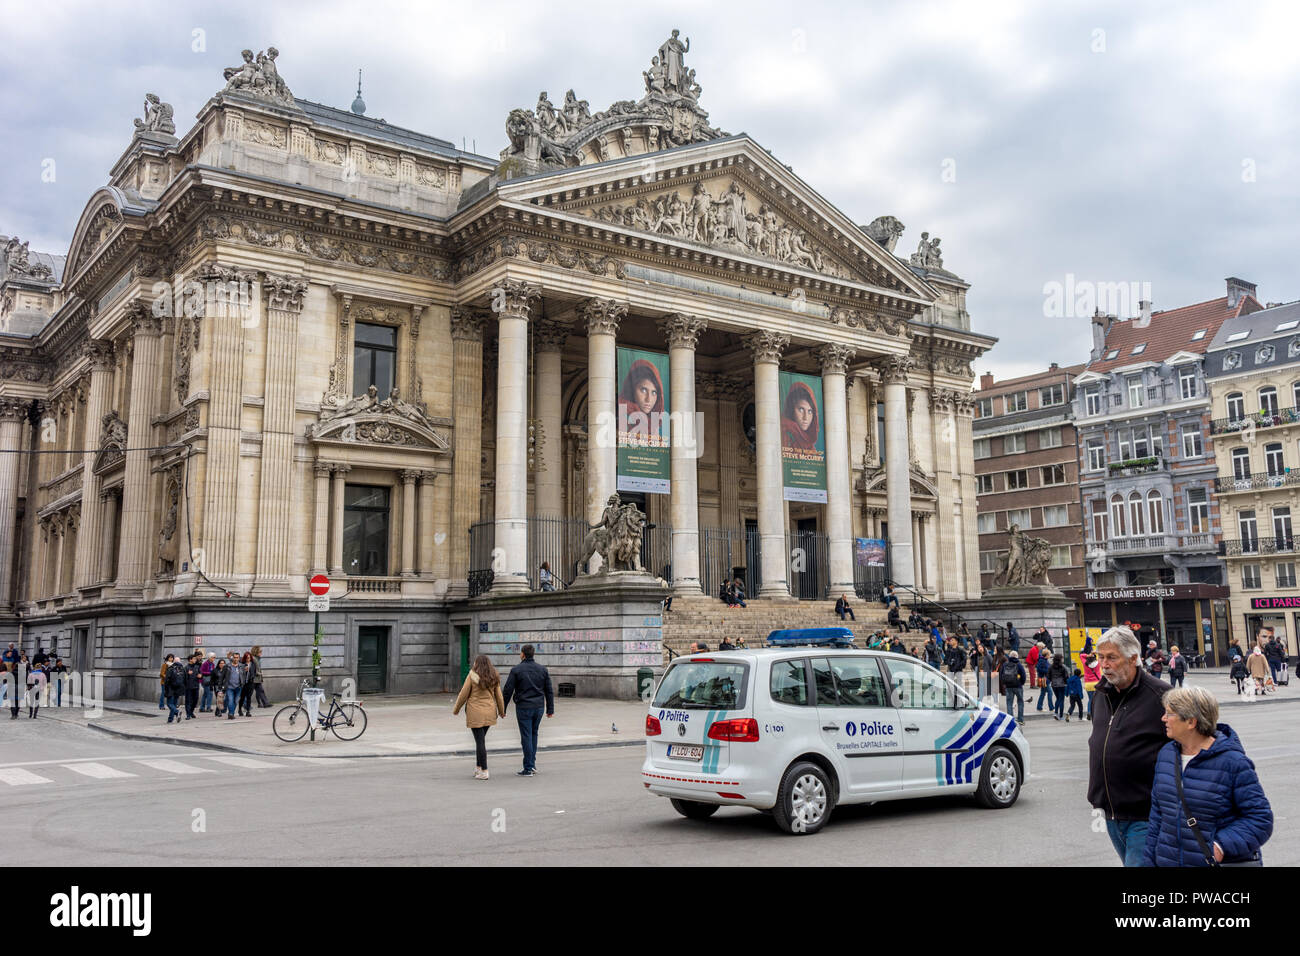 Brüssel, Belgien - 17 April: Ein Polizei Auto geparkt ist die Bruessel darauf Börse in Brüssel, Belgien, Europa berufskranheiten am 17. April. Steve Mc. Curry ph Stockfoto